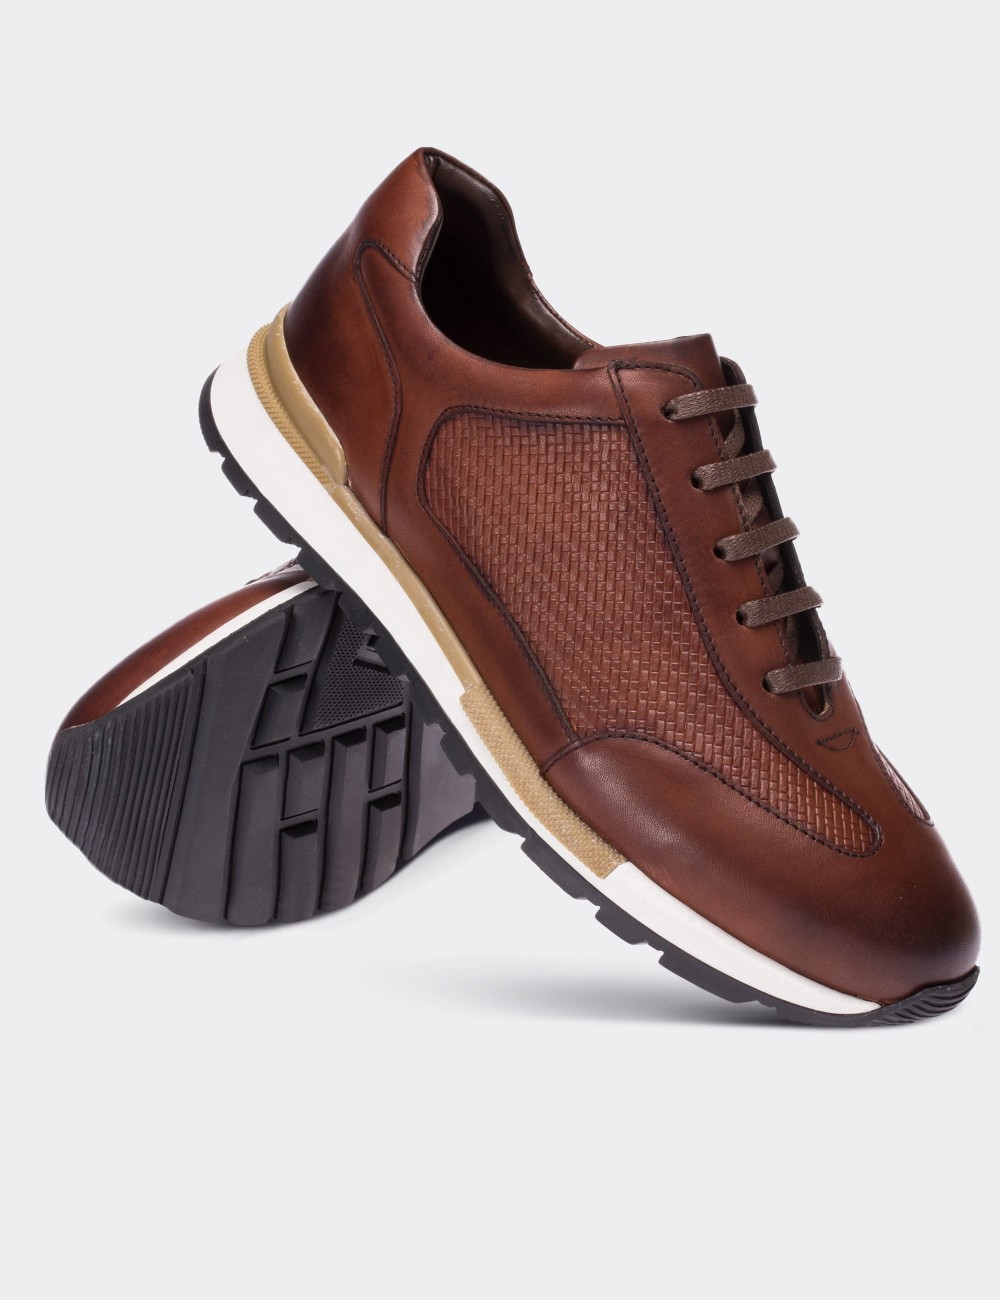 Tan  Leather Sneakers - 01729MTBAT01